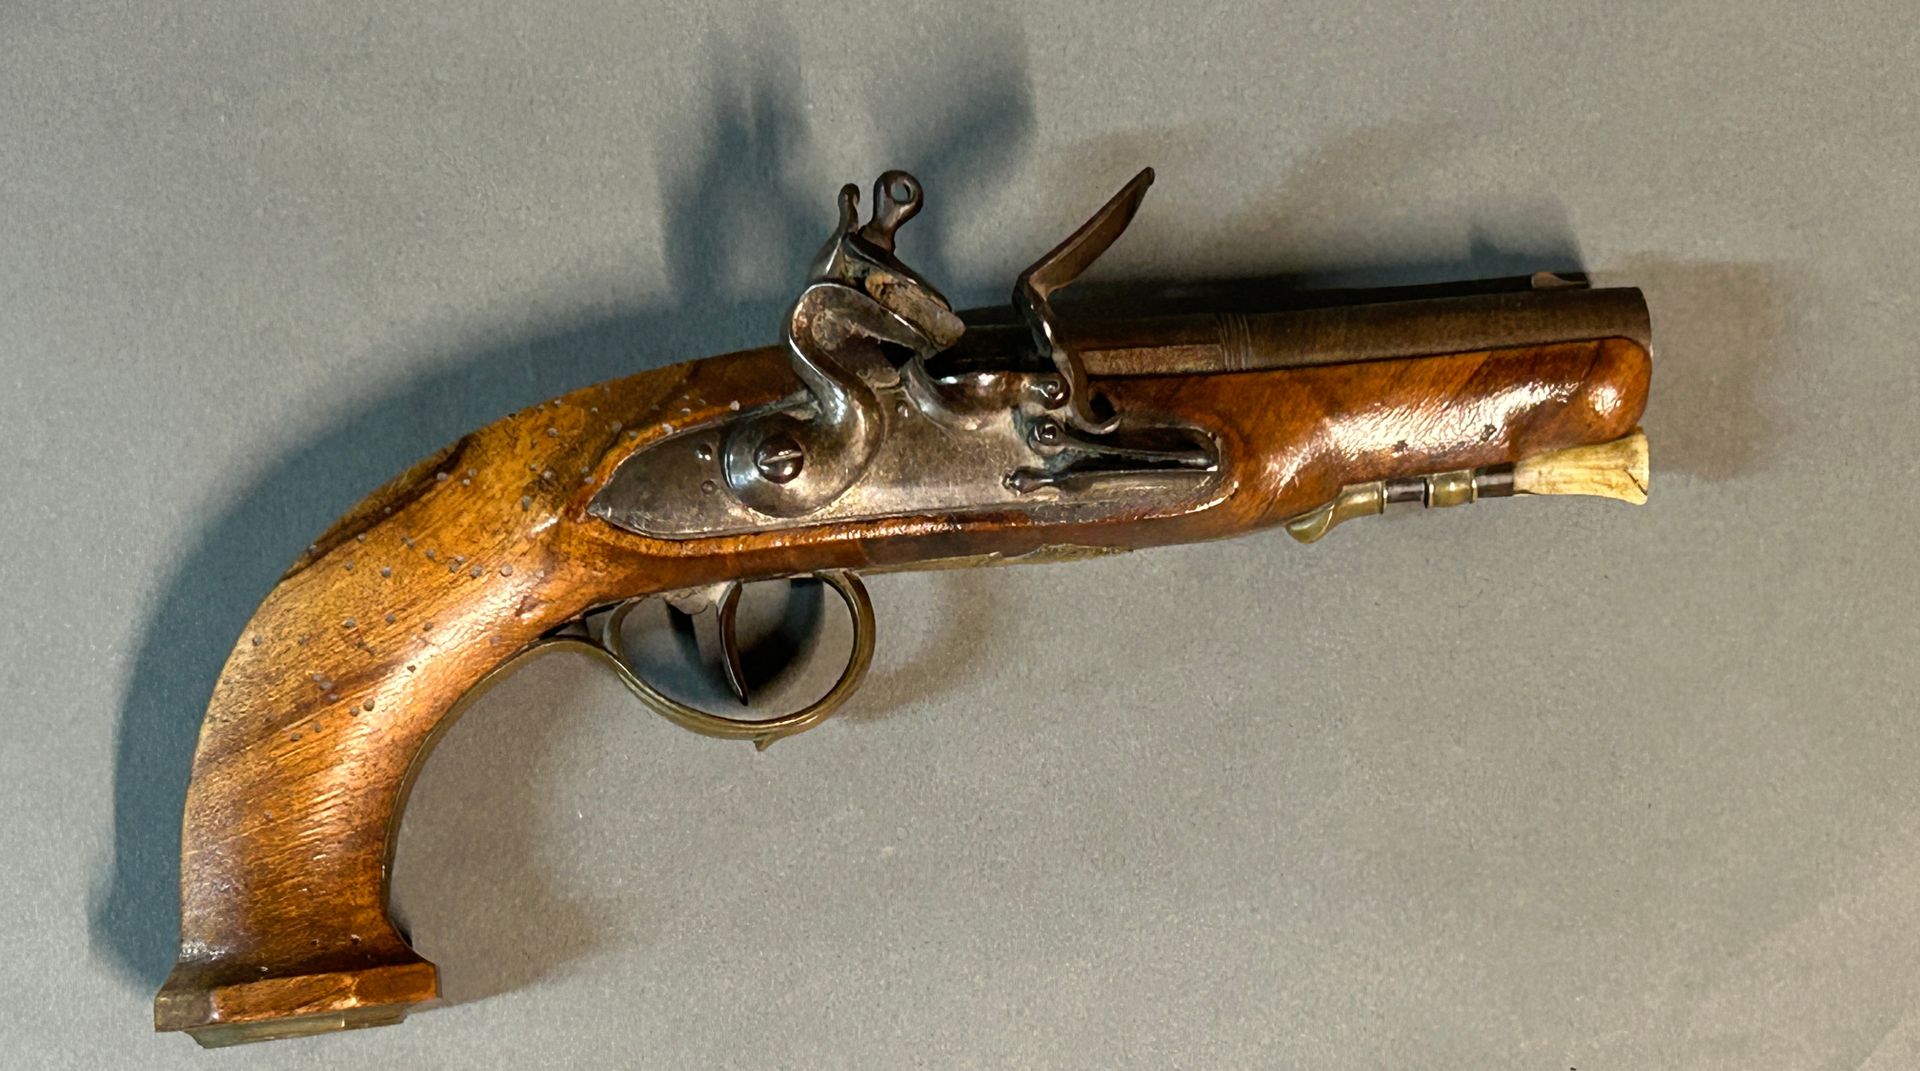 Null 约1785年的小型燧发枪。

燧发枪锁上有线条装饰，锤子在天鹅颈的圆形驼峰上。

大马士革枪管，双套筒，圆形。

胡桃木枪身（木质），所有铜质配件都有&hellip;